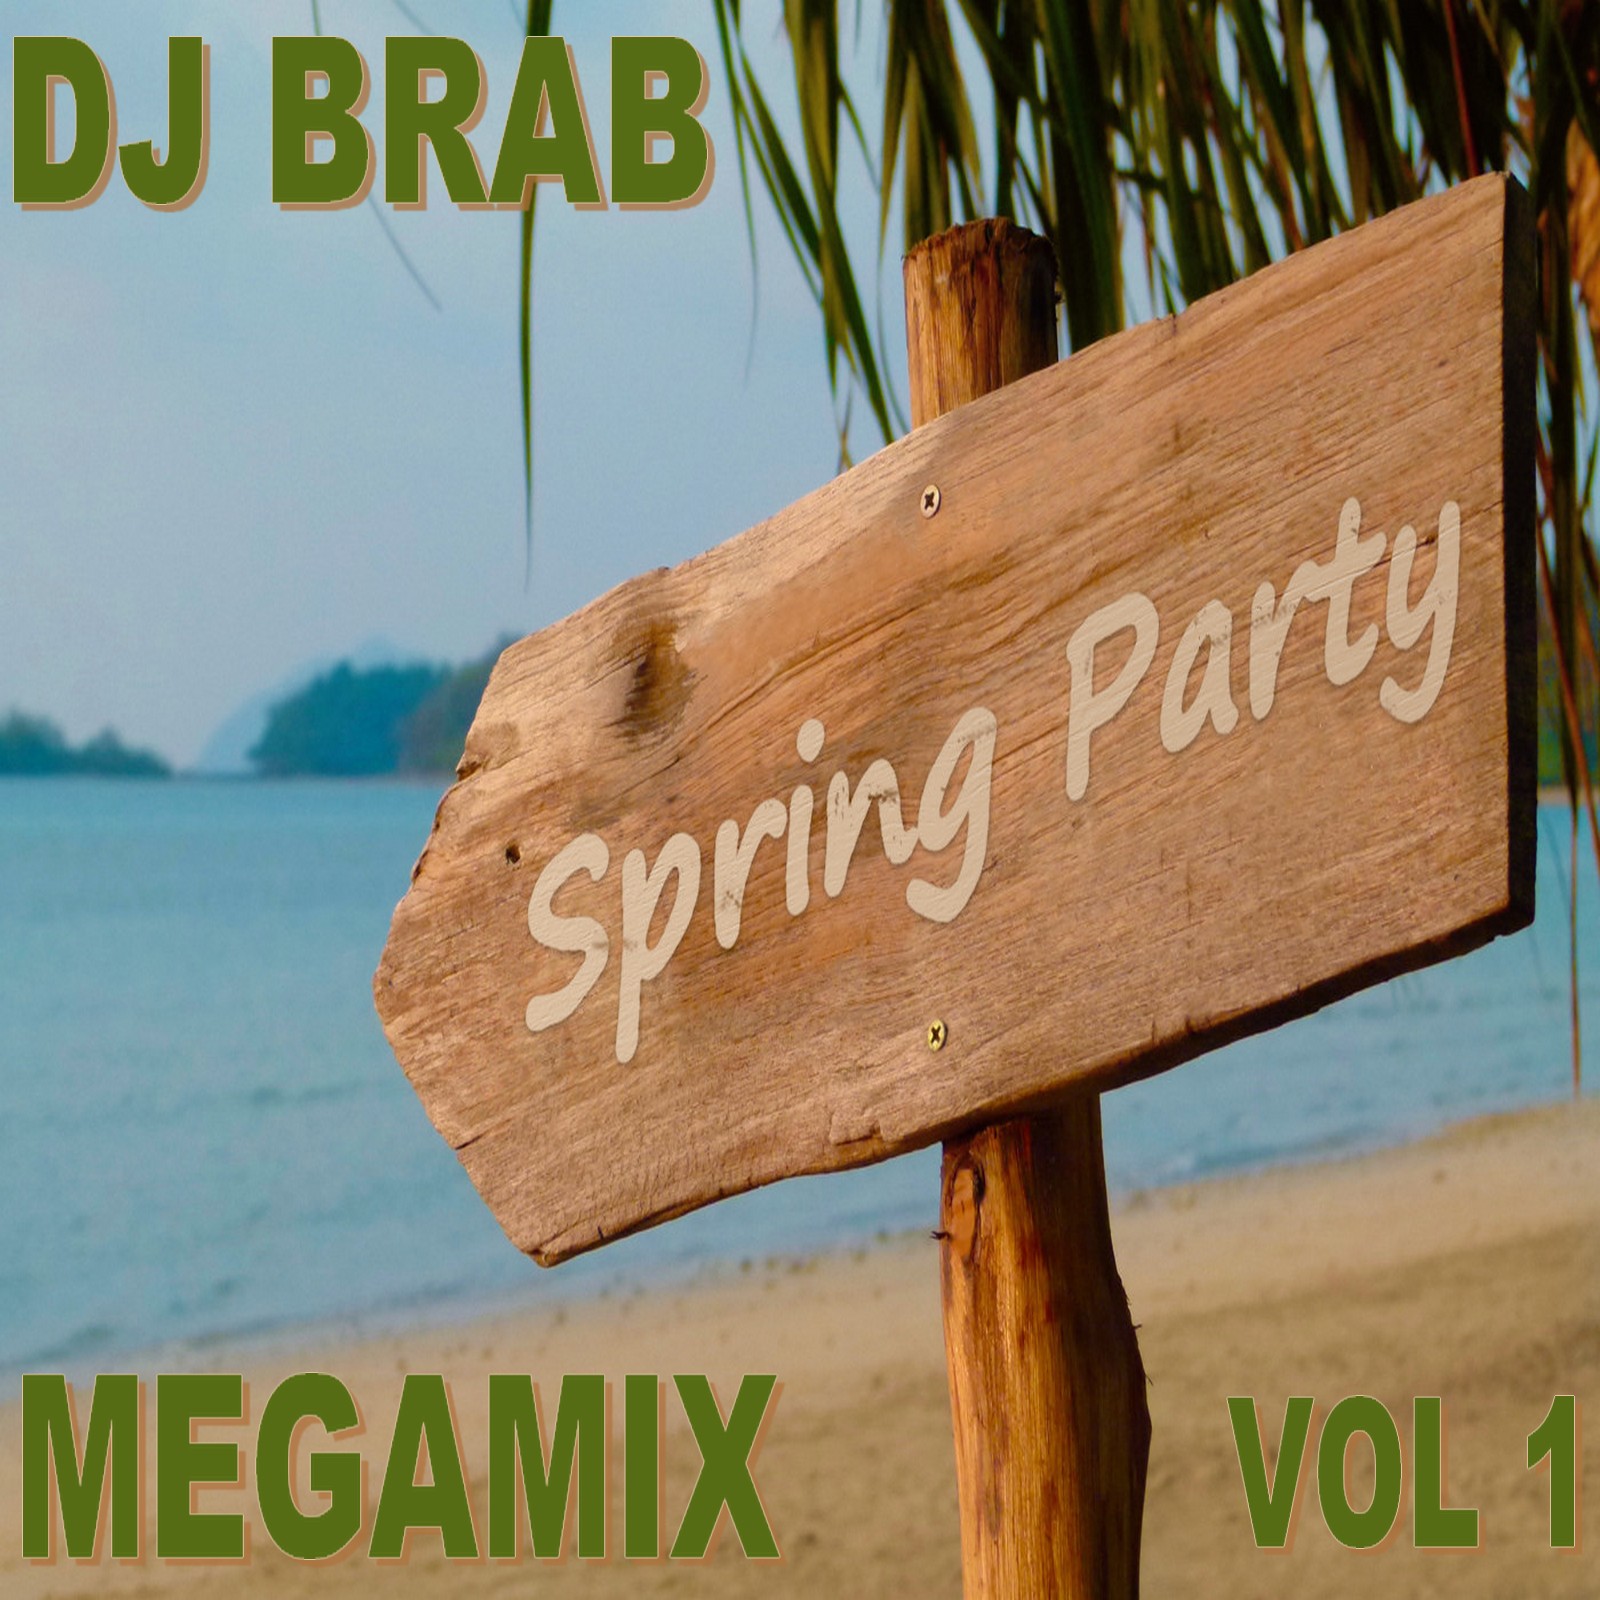 DJ Brab Spring Party Megamix Vol 1 3788_f9a07af83781